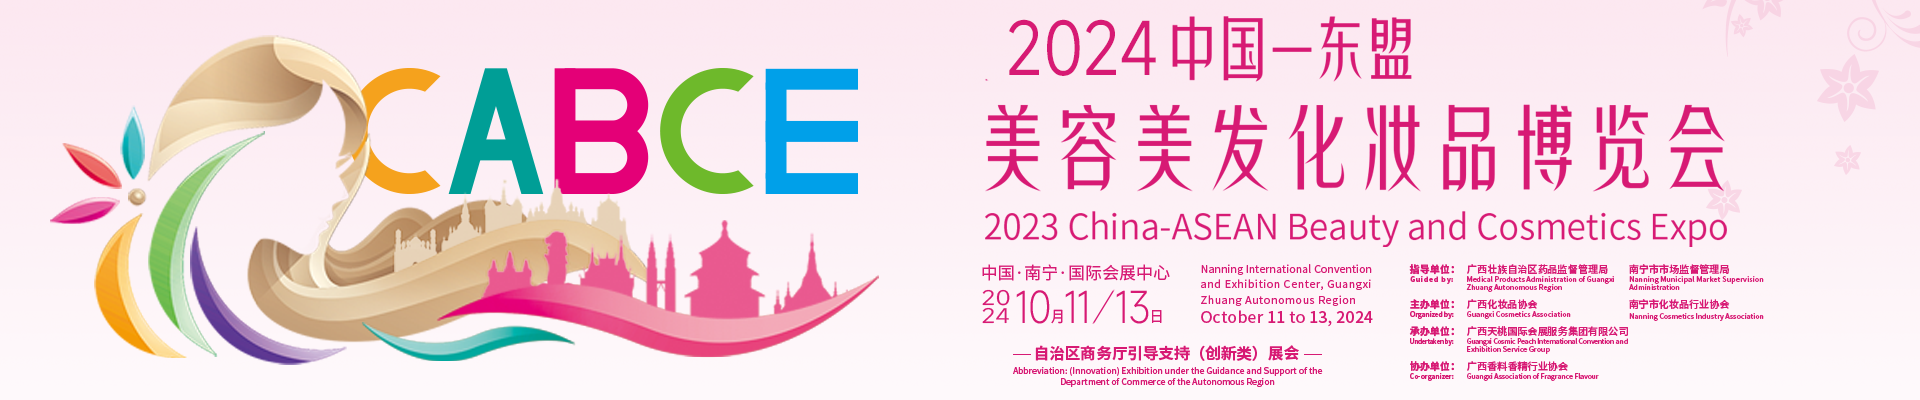 2024中国-东盟美容美发化妆品博览会